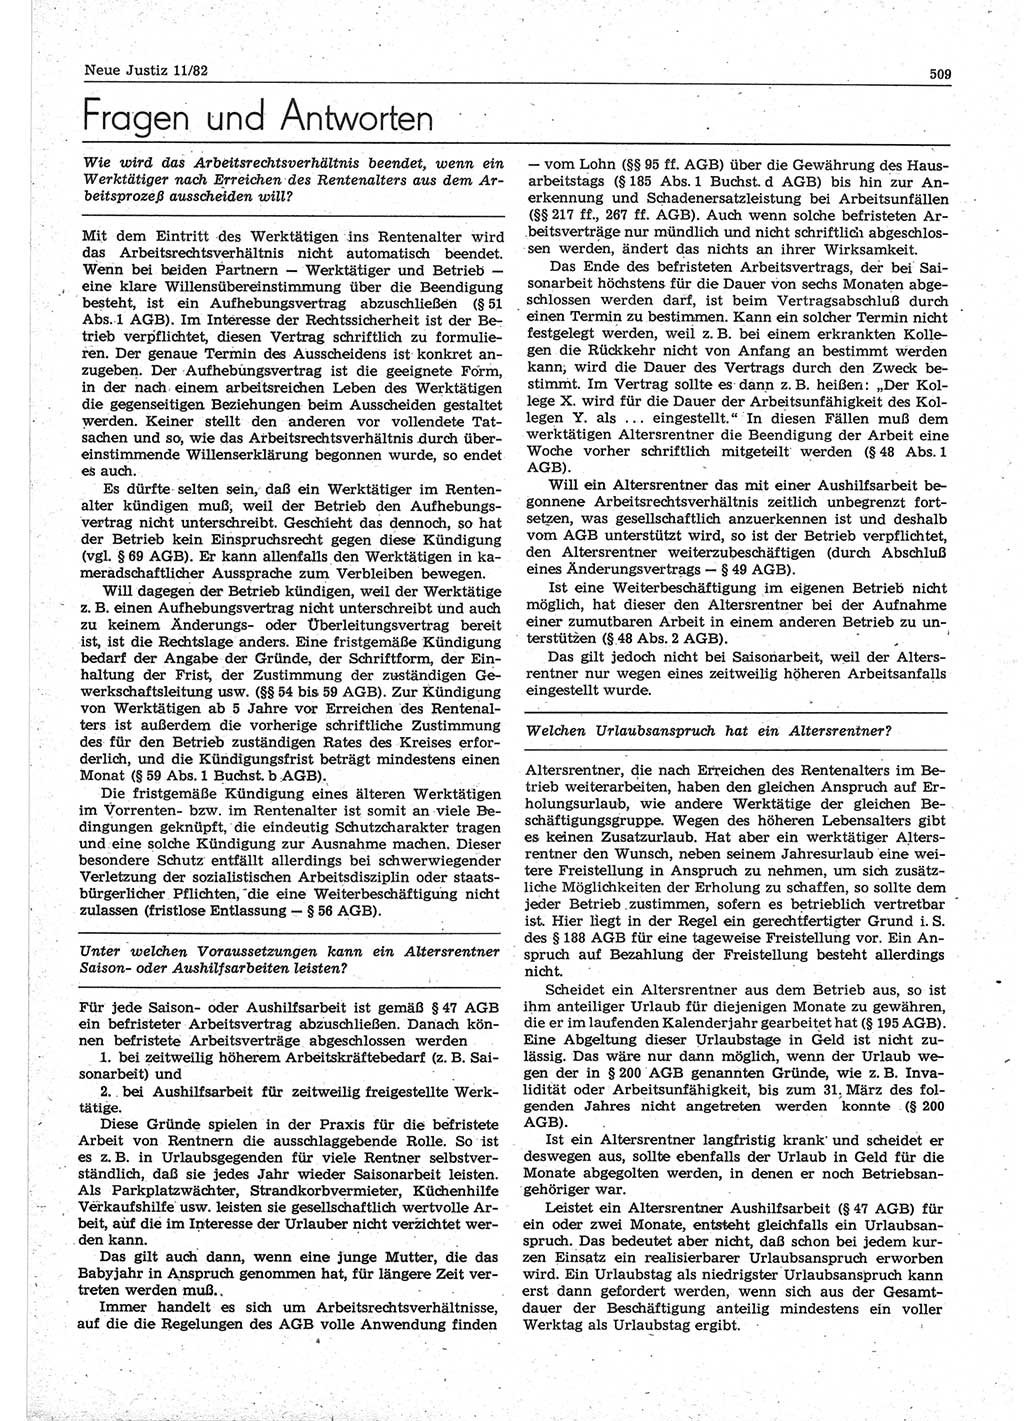 Neue Justiz (NJ), Zeitschrift für sozialistisches Recht und Gesetzlichkeit [Deutsche Demokratische Republik (DDR)], 36. Jahrgang 1982, Seite 509 (NJ DDR 1982, S. 509)